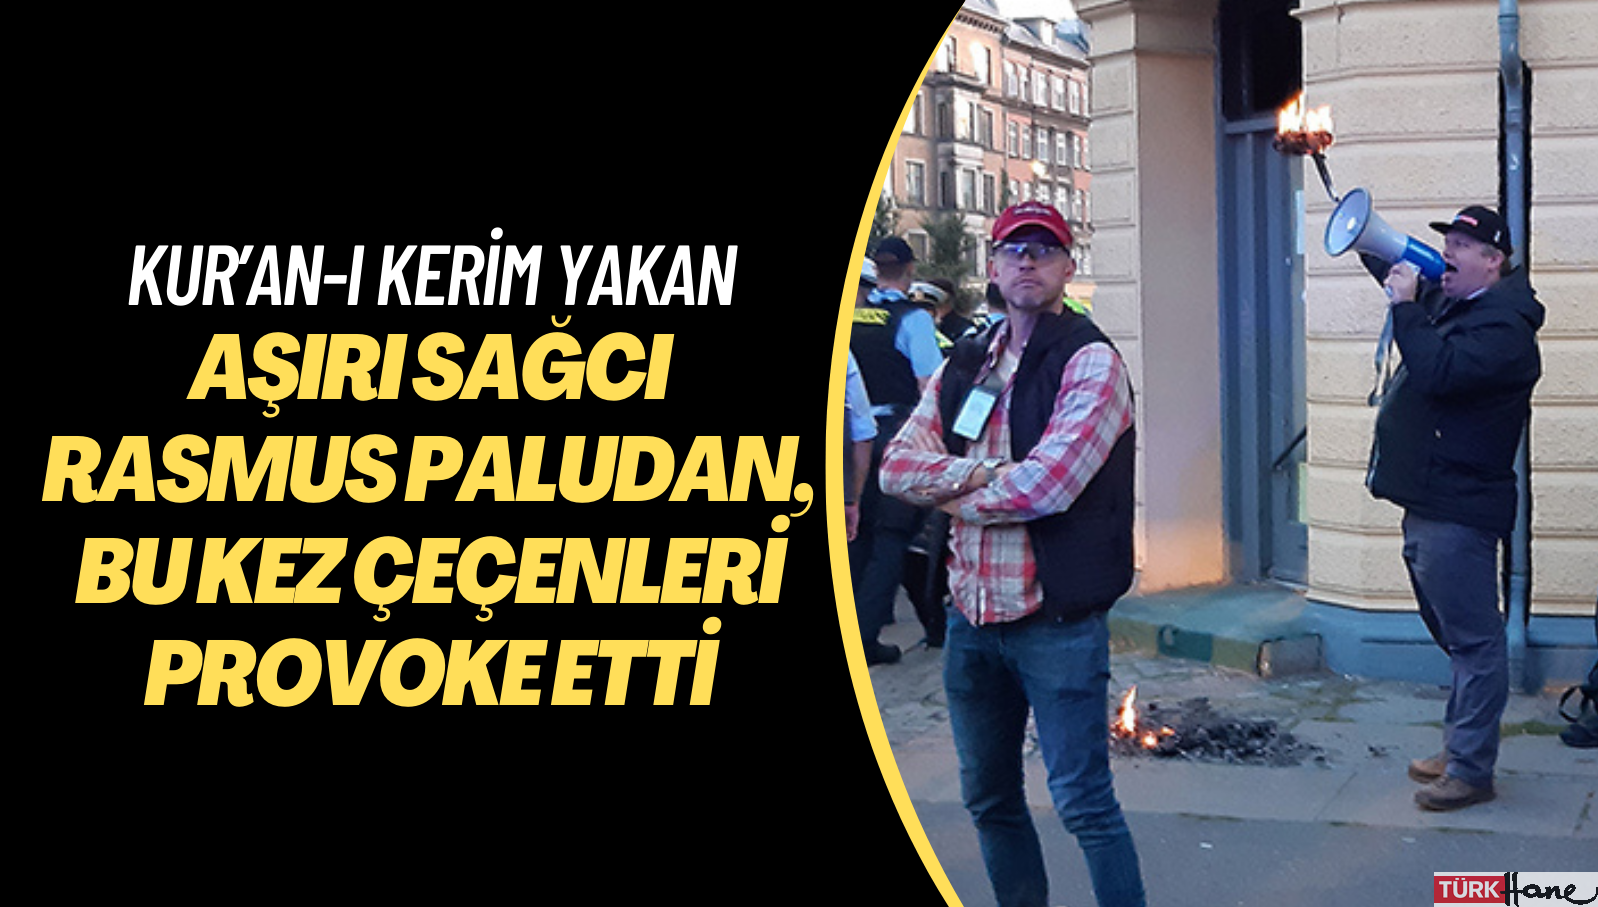 Kur’an-ı Kerim yakan aşırı sağcı Rasmus Paludan, bu kez Çeçenleri provoke etti